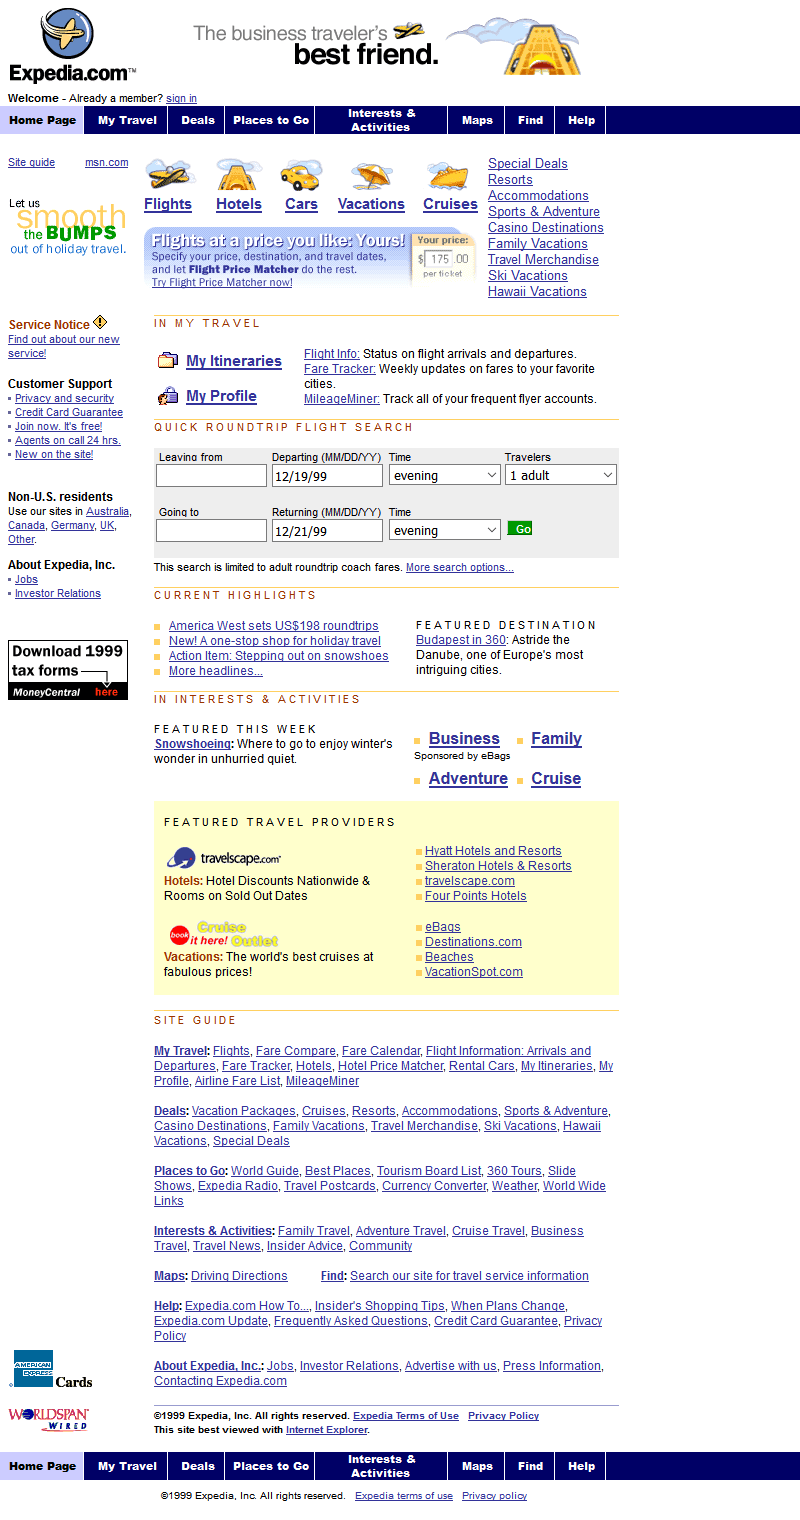 Expedia.com website in 1999